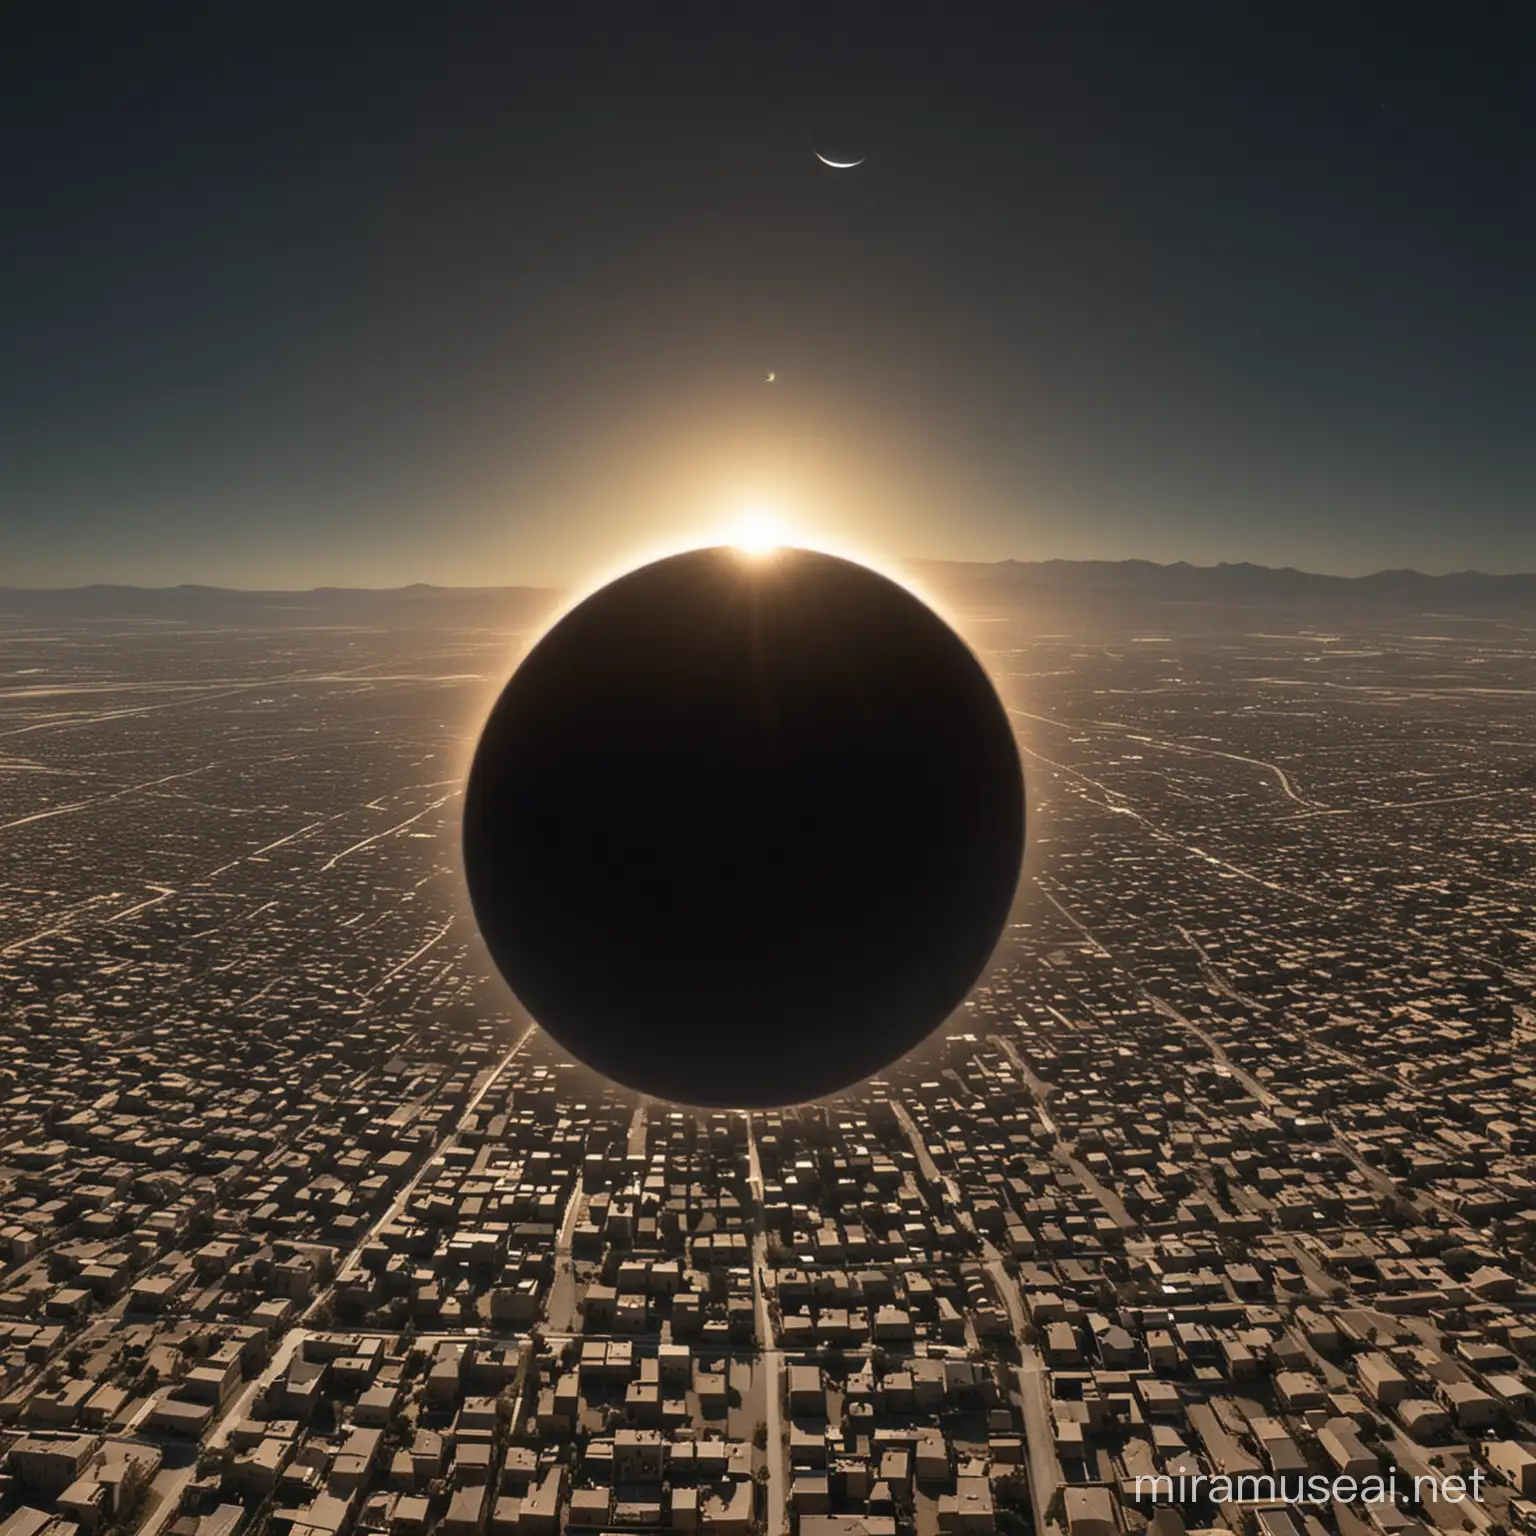 crea una foto realista del eclipse total de sol de 8 de abril. pasando por los pueblos llamados ninive en UU AA